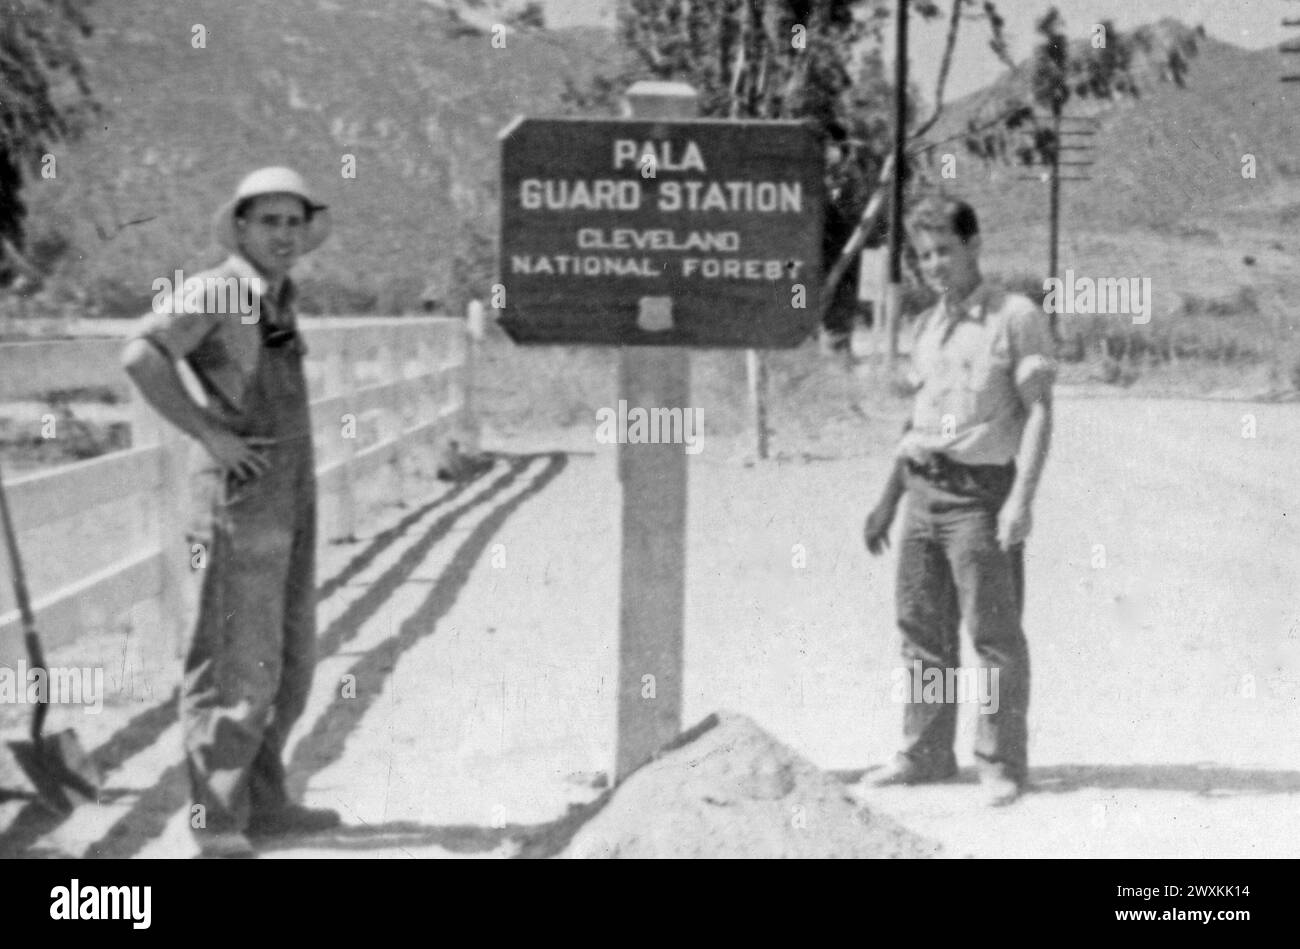 Bande Pala des Indiens de mission : photographie de deux hommes à côté de la station de garde Pala panneau pour la forêt nationale de Cleveland CA. 1936-1942 Banque D'Images